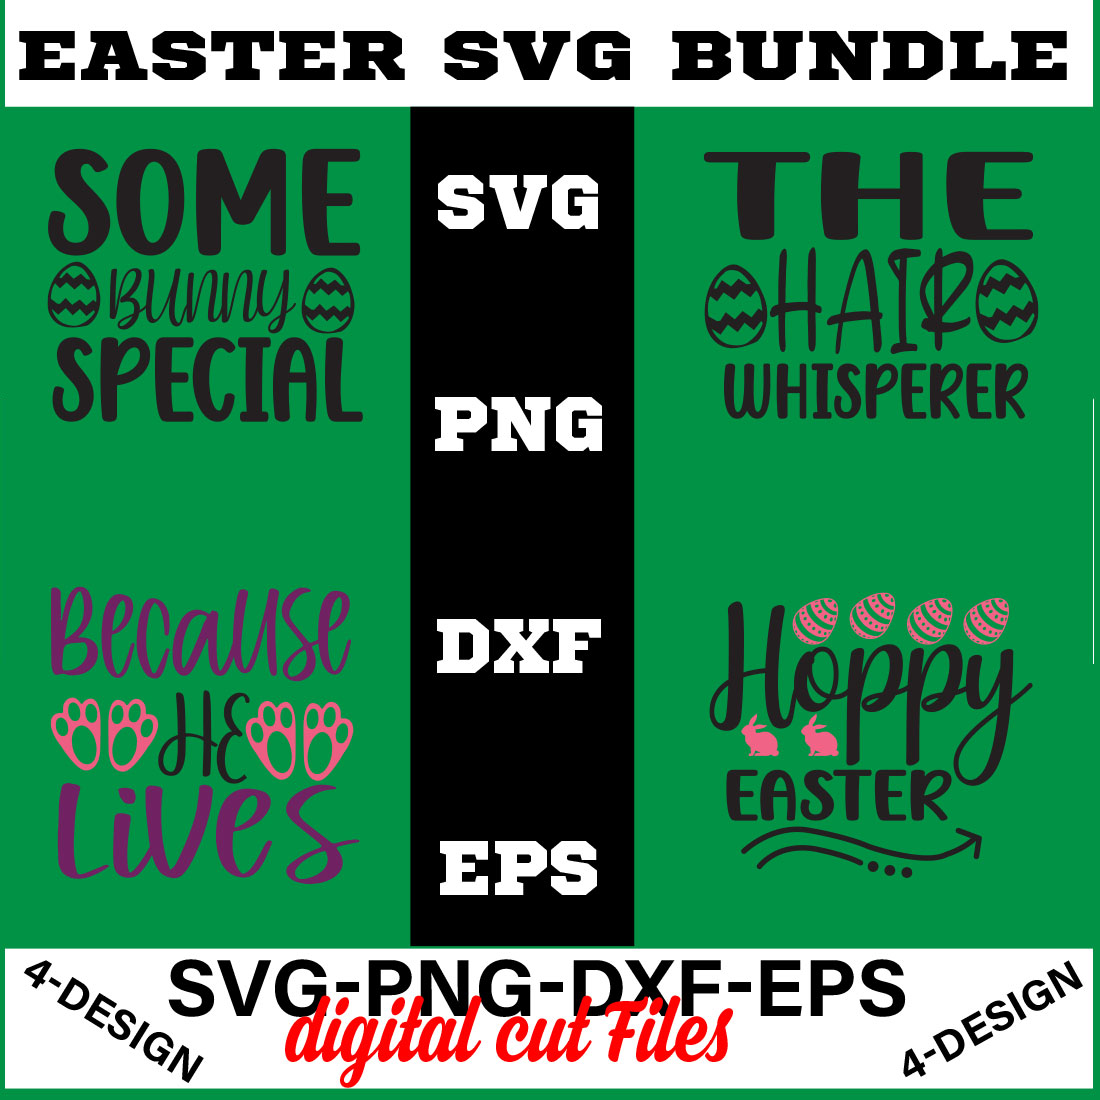 Happy Easter SVG Bundle, Easter SVG, Easter quotes, Easter Bunny svg, Easter Egg svg, Volume-03 cover image.